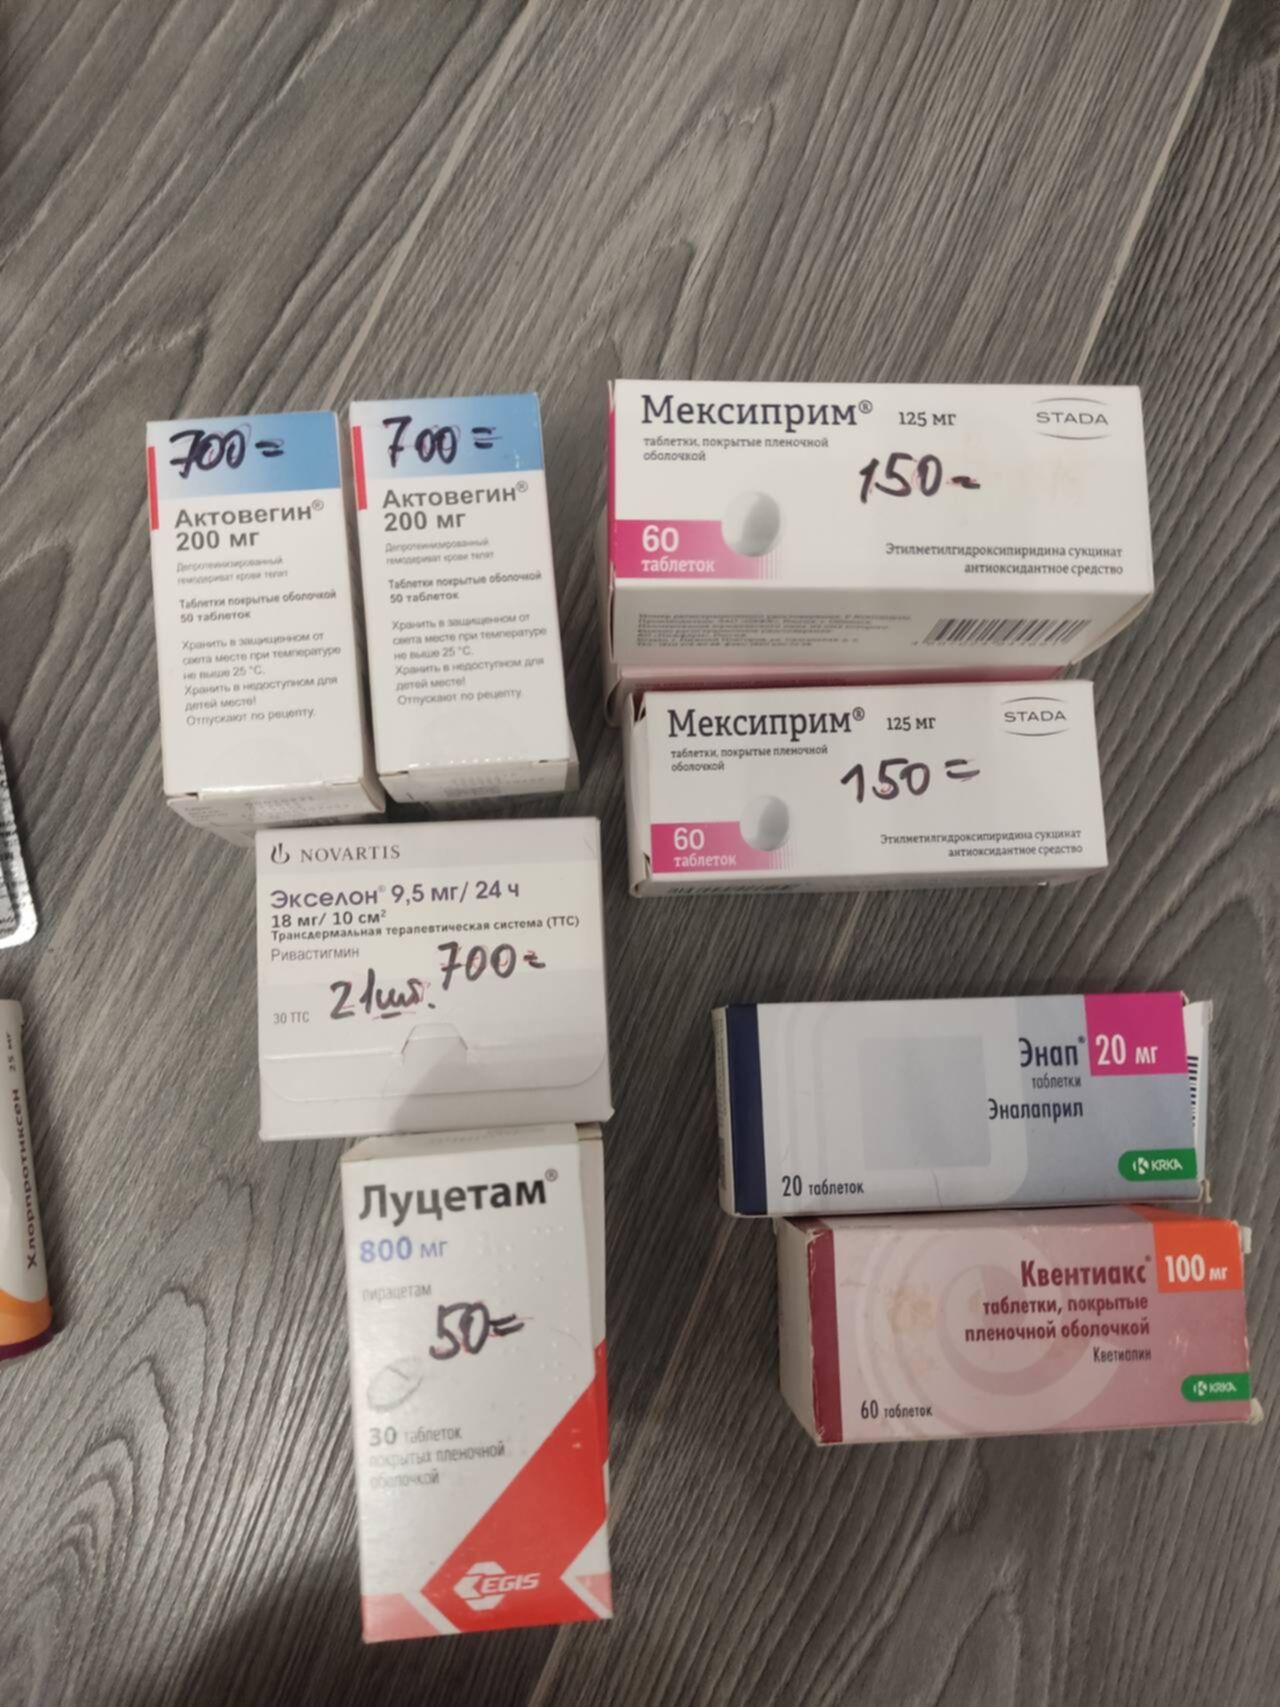 Поиск заказ лекарства экми. Таблетки. Лекарства в аптеках Санкт-Петербурга. Акме поиск лекарств в аптеках СПБ.